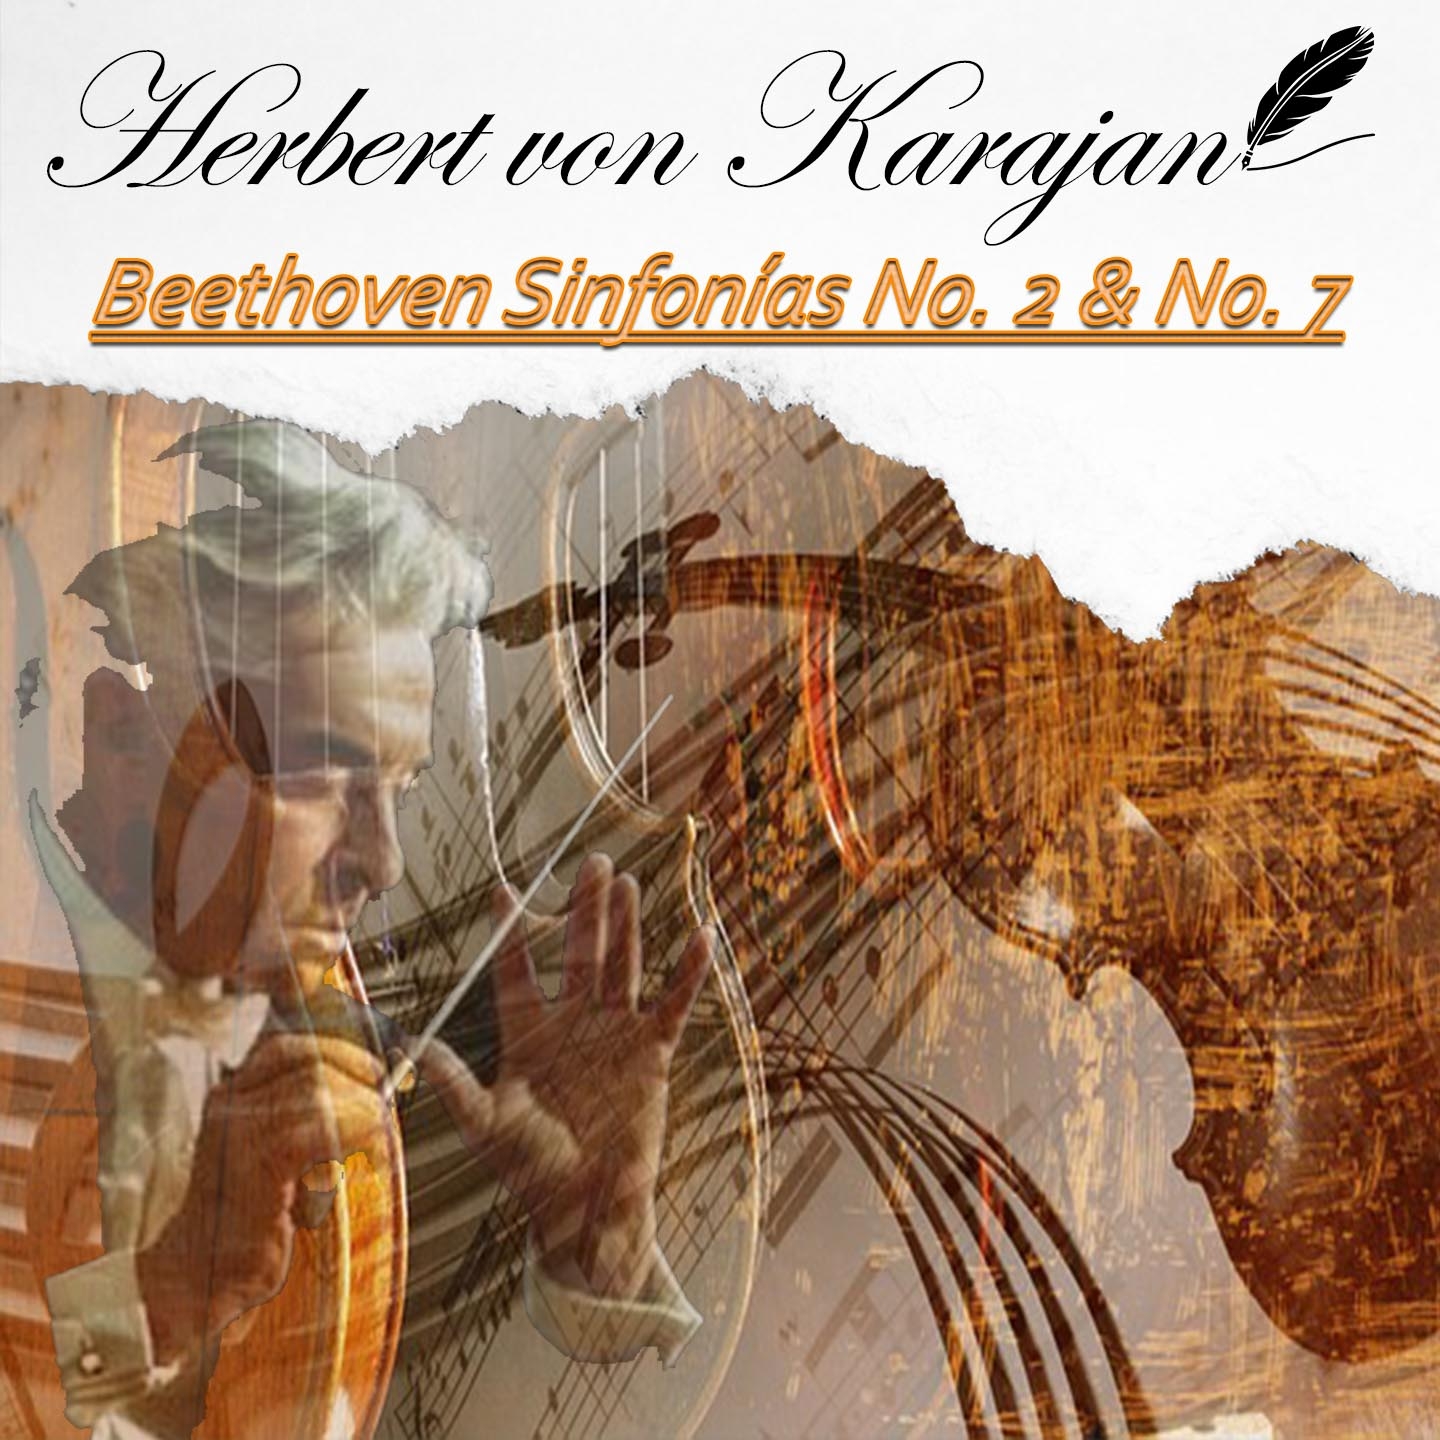 Herbert von Karajan, Beethoven Sinfoni as No. 2  No. 7